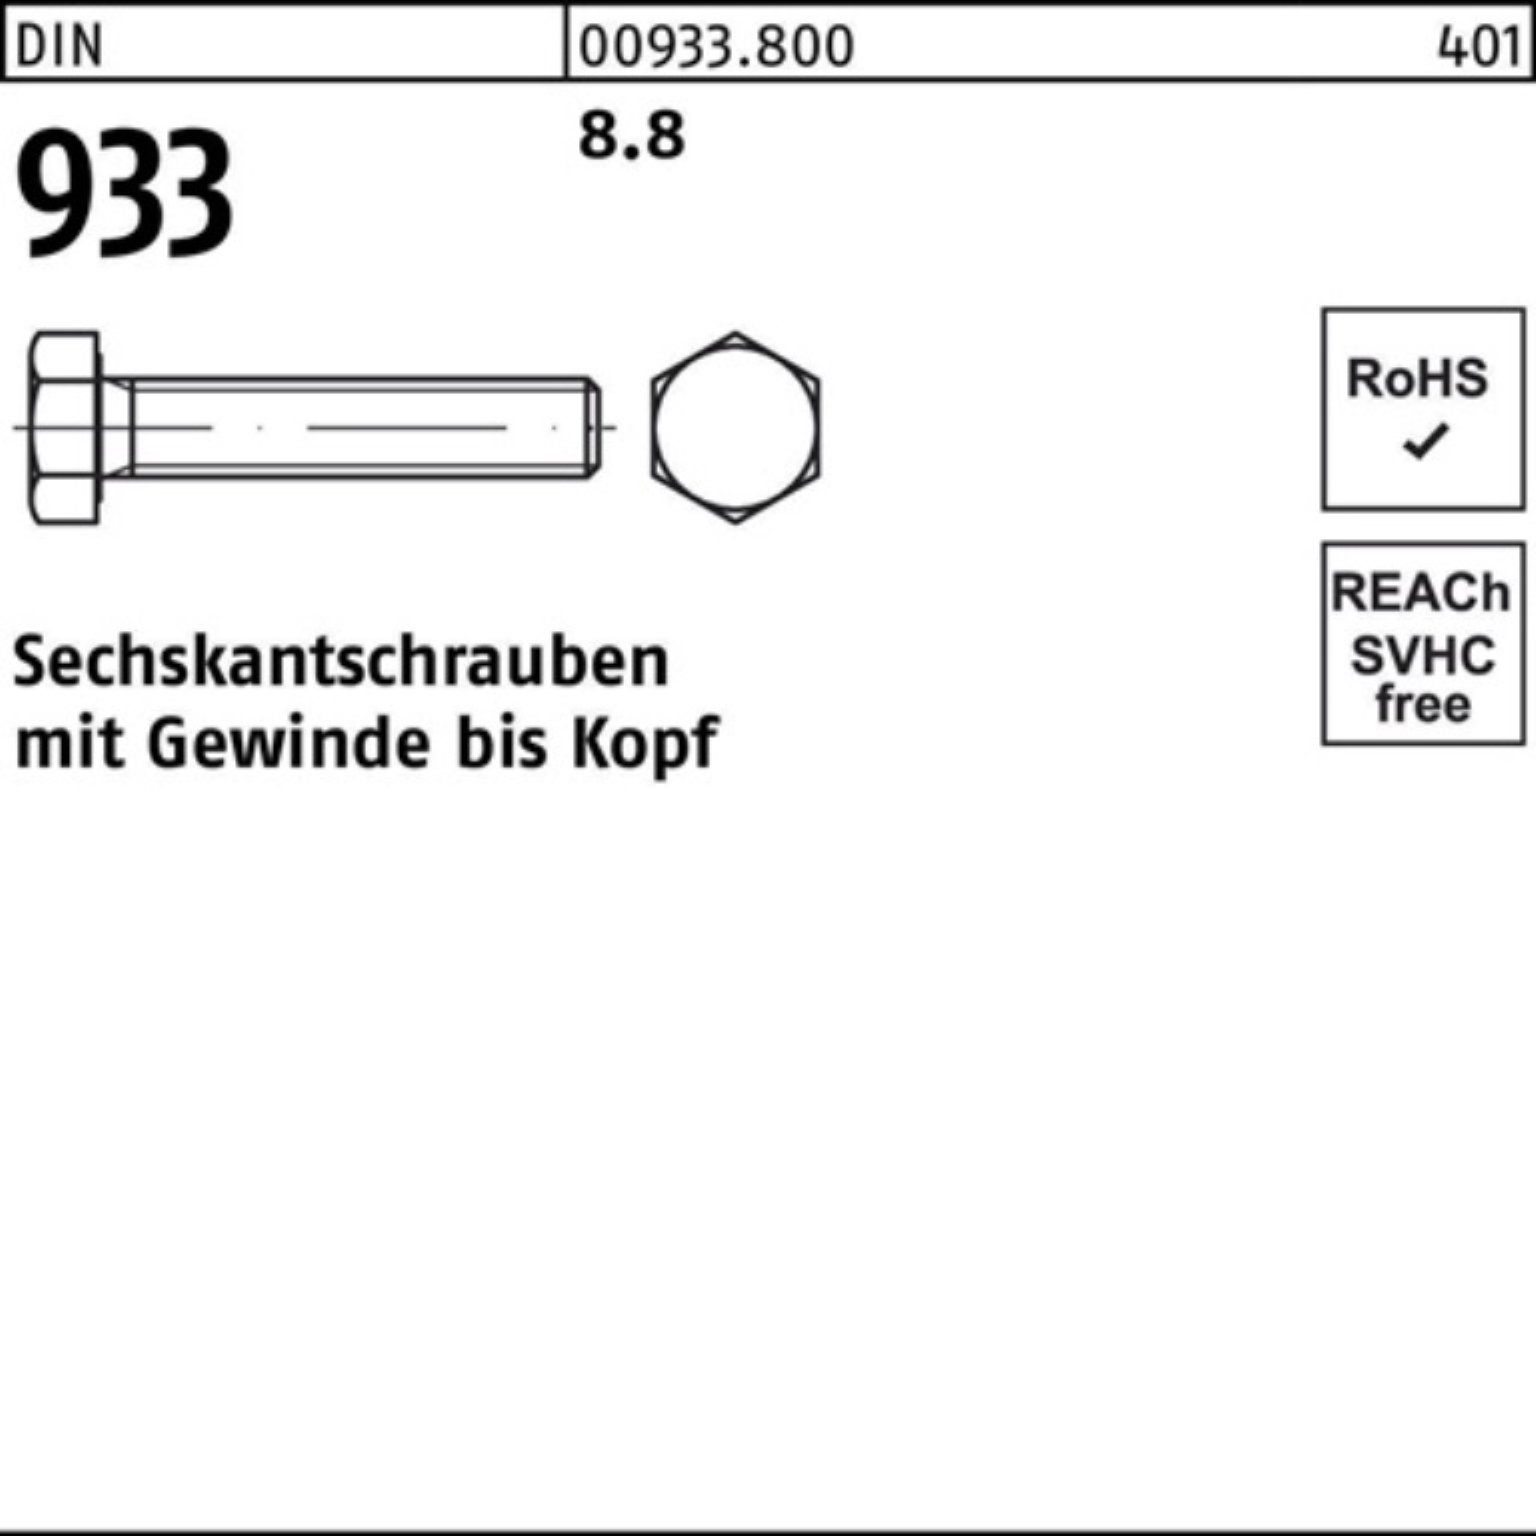 DIN Pack 50 933 Stück 240 Reyher DIN VG 933 M10x Sechskantschraube 8.8 Sechskantschraube 100er